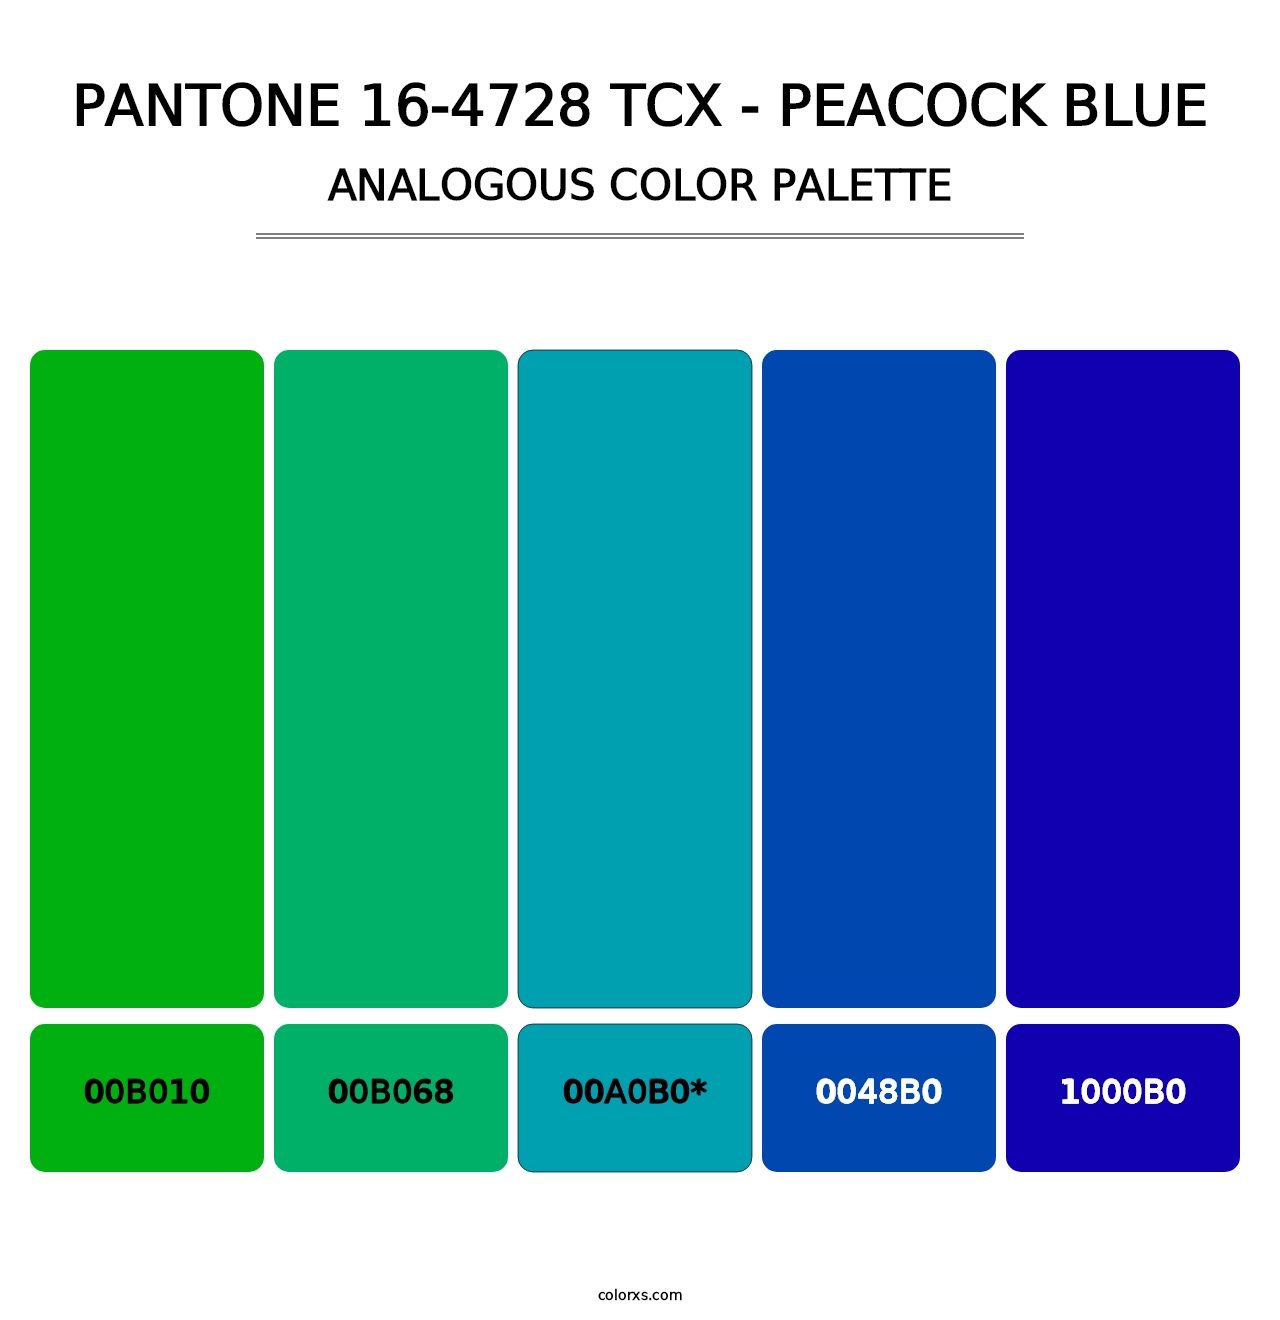 PANTONE 16-4728 TCX - Peacock Blue - Analogous Color Palette